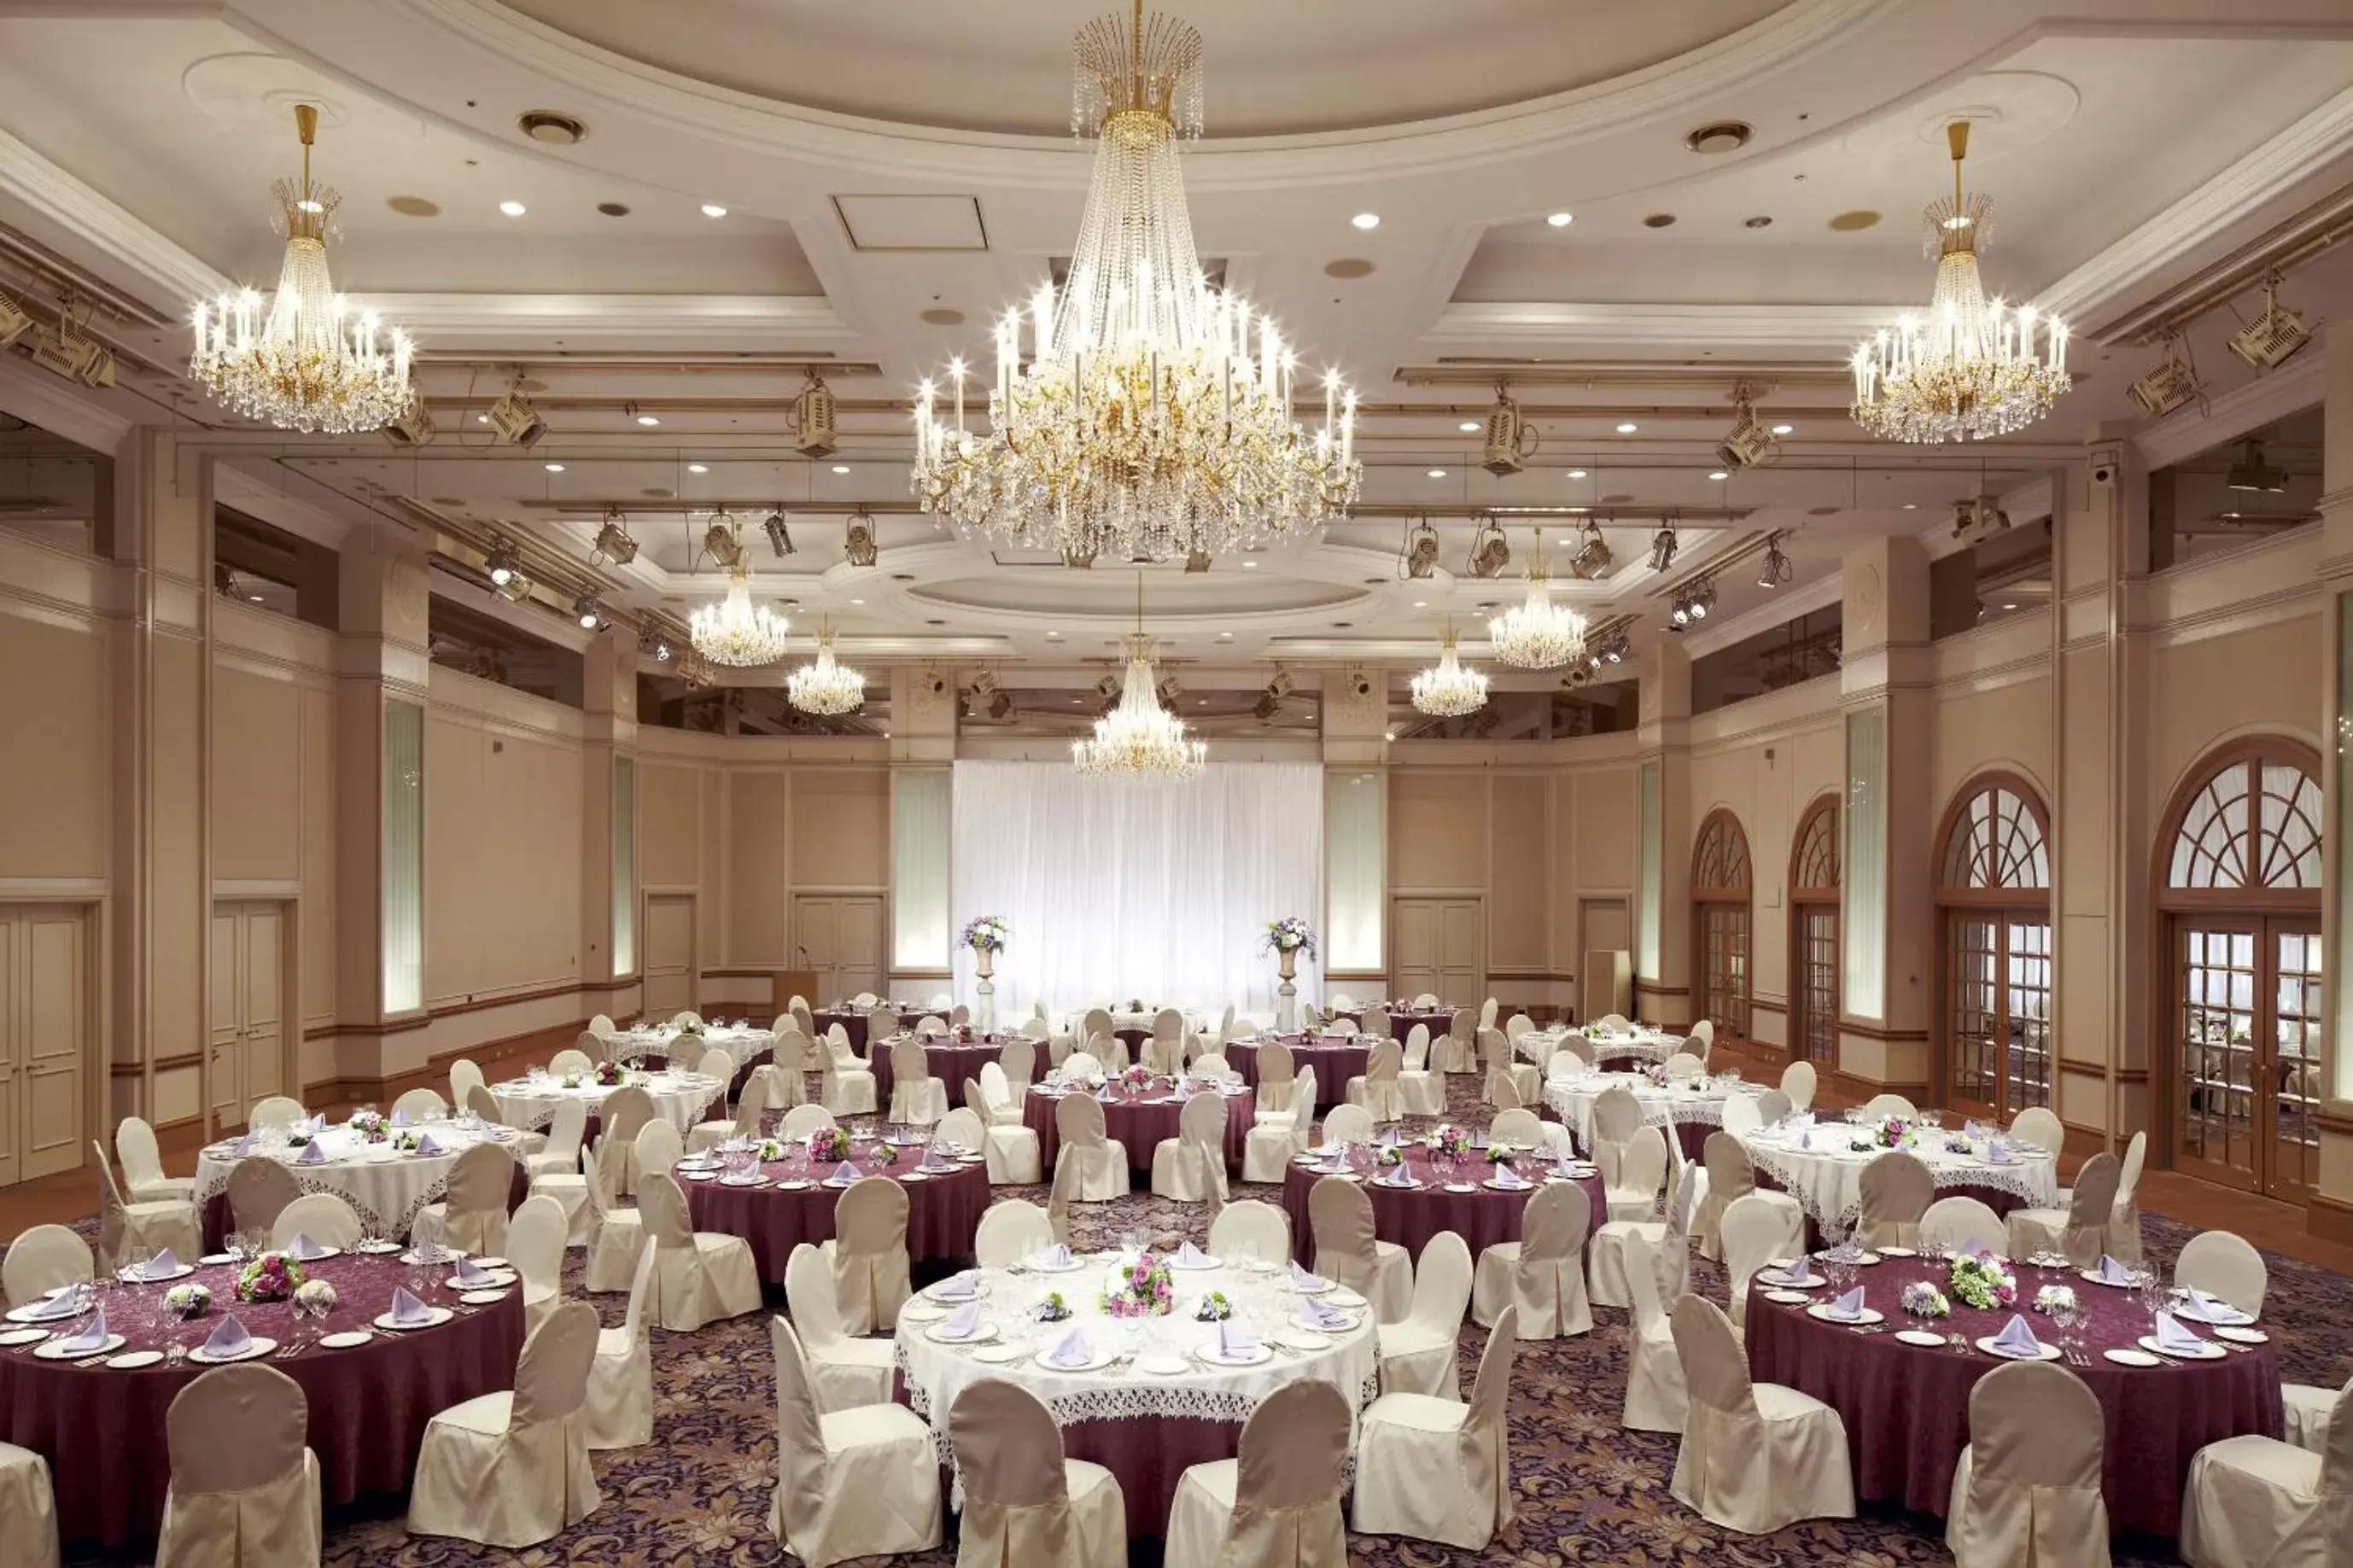 Banquet/Function facilities, Banquet Facilities in Dai-ichi Hotel Tokyo